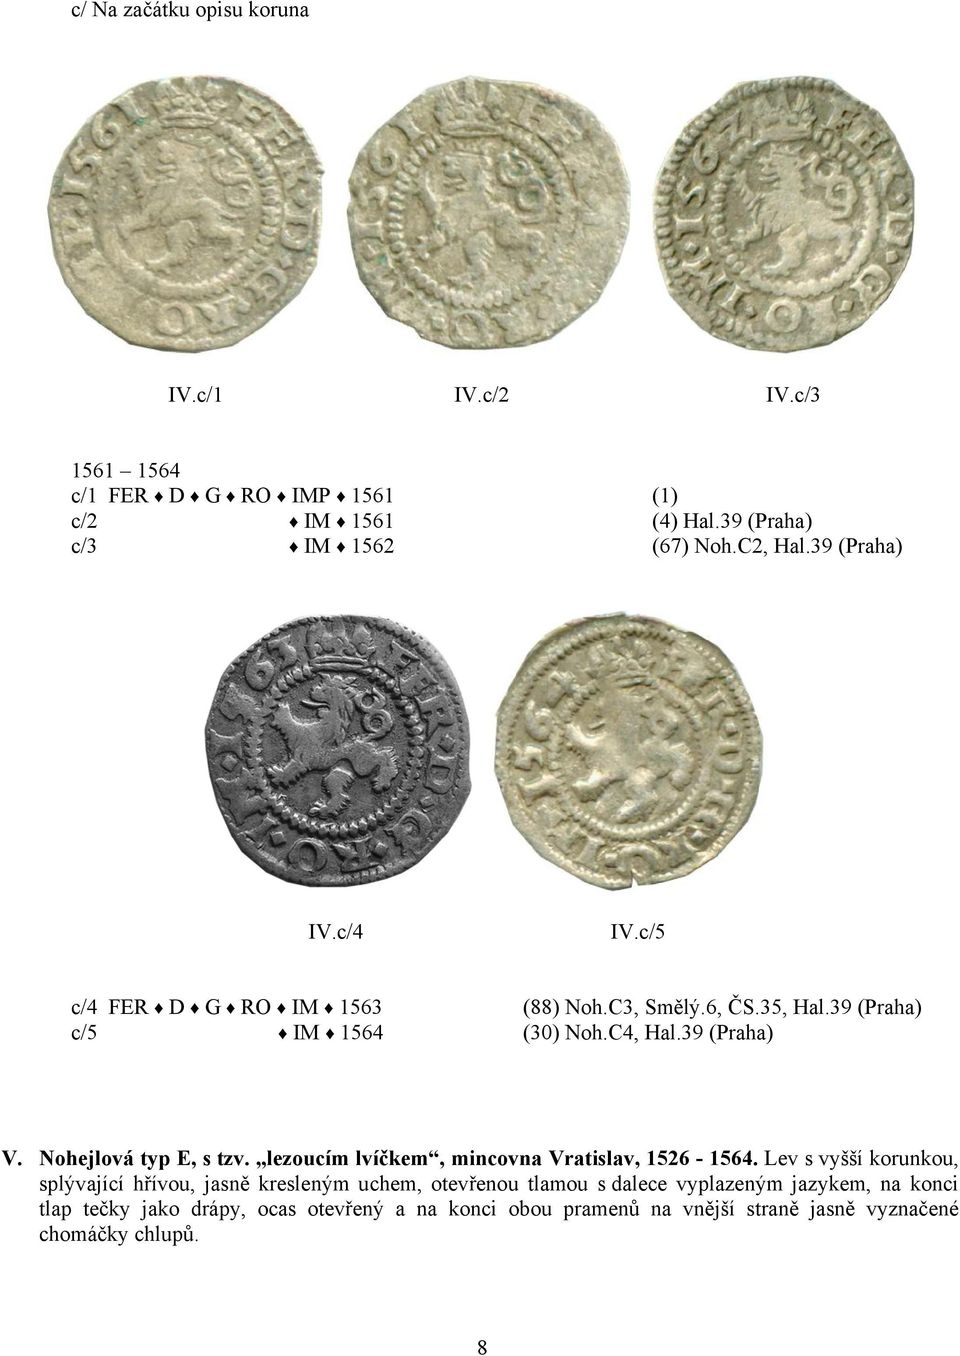 Nohejlová typ E, s tzv. lezoucím lvíčkem, mincovna Vratislav, 1526-1564.